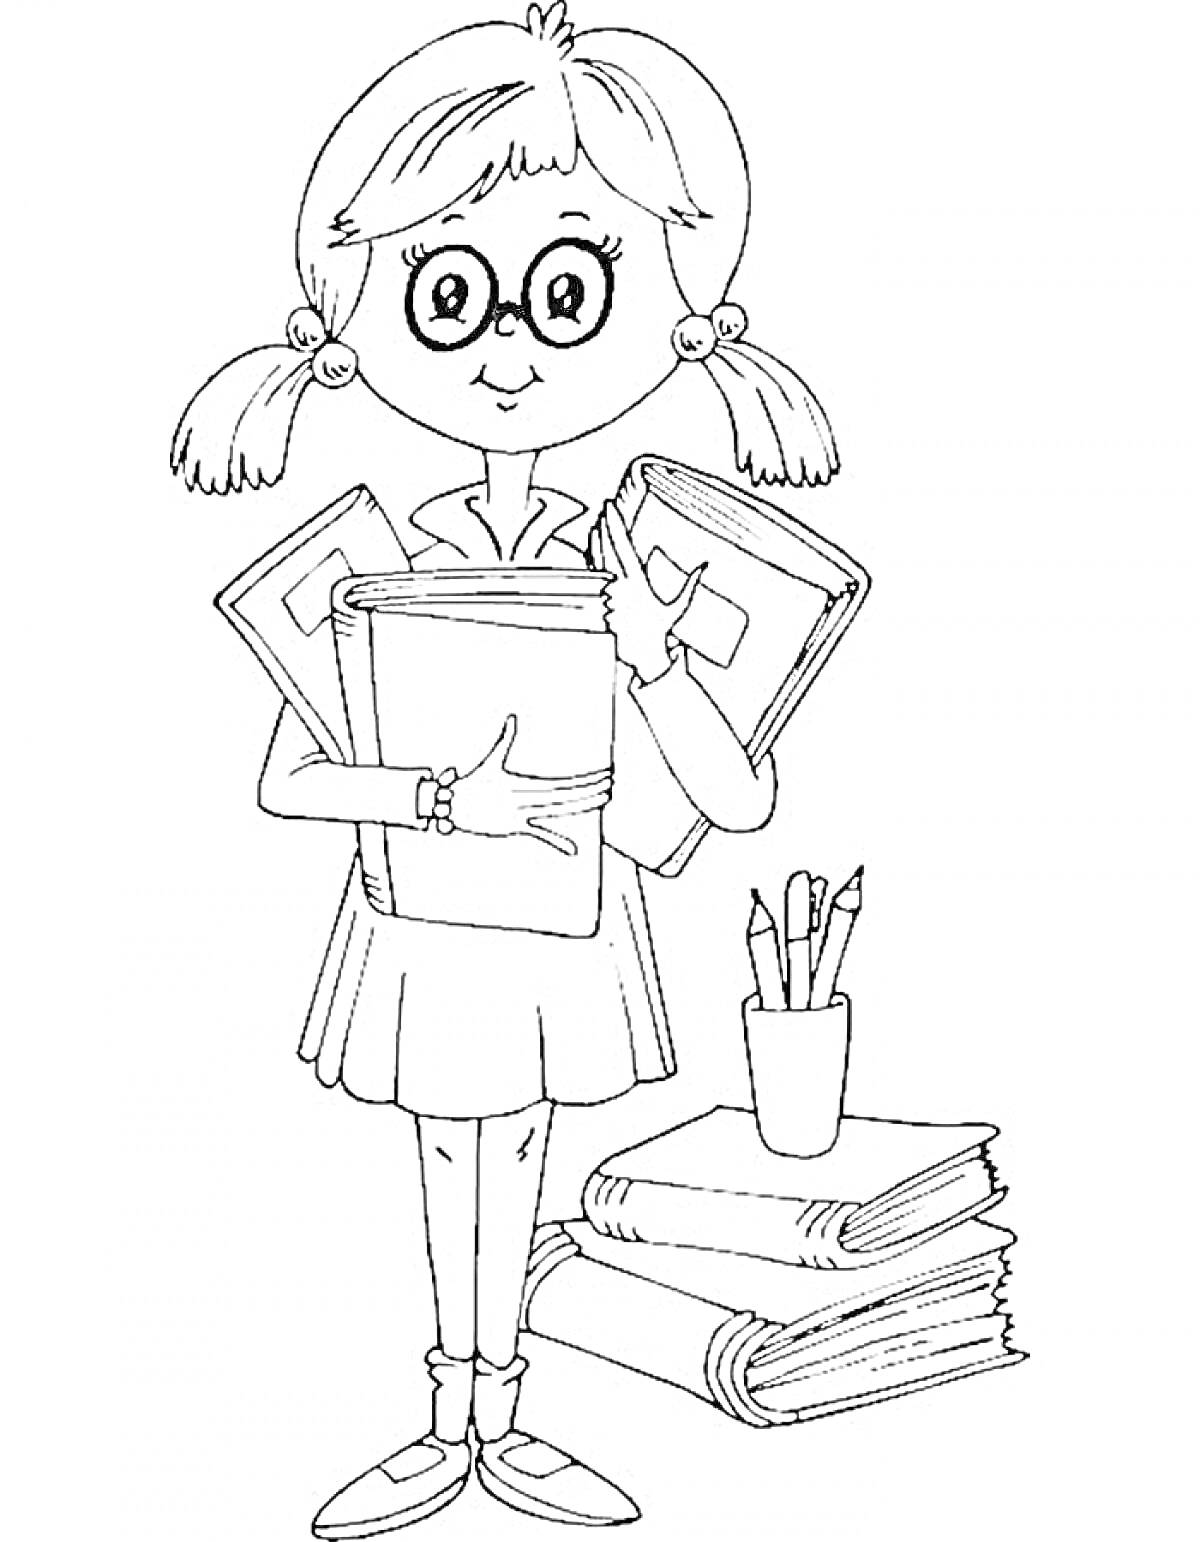 Девочка в очках с книгами и тетрадями, карандашница с карандашами, стопка книг